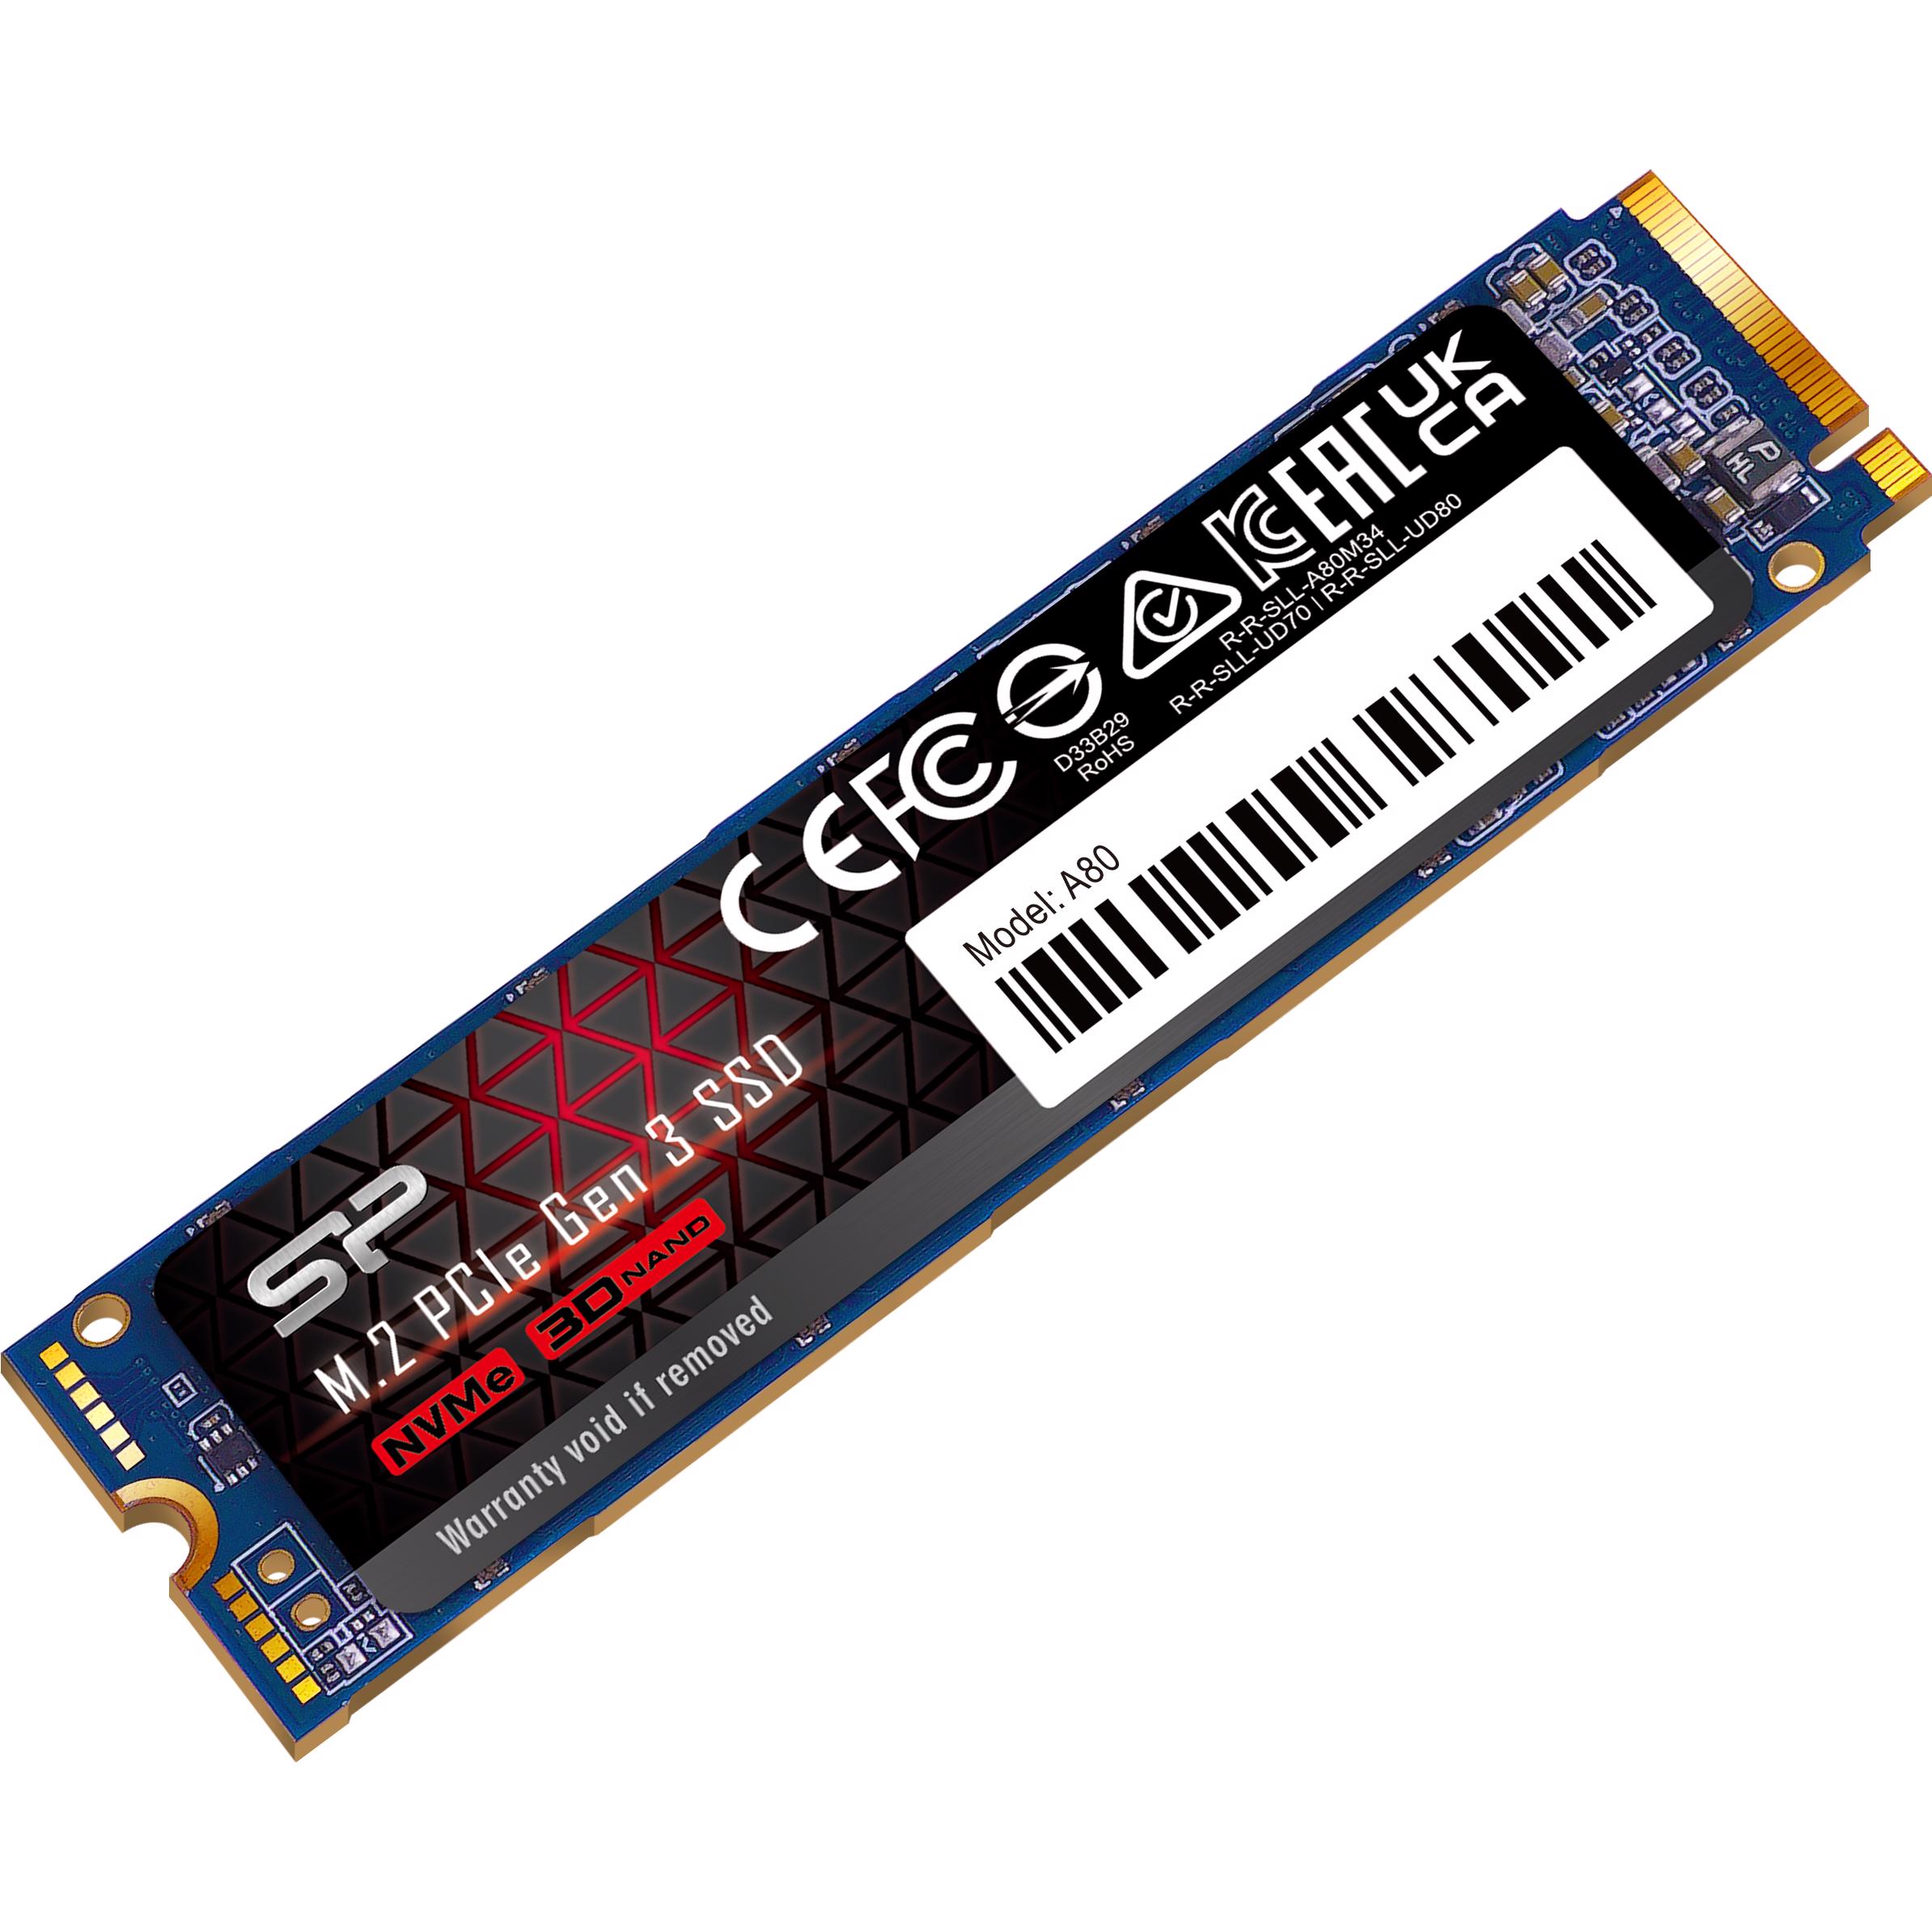 シリコンパワー SSD 2TB M.2 2280 PCIe3.0×4